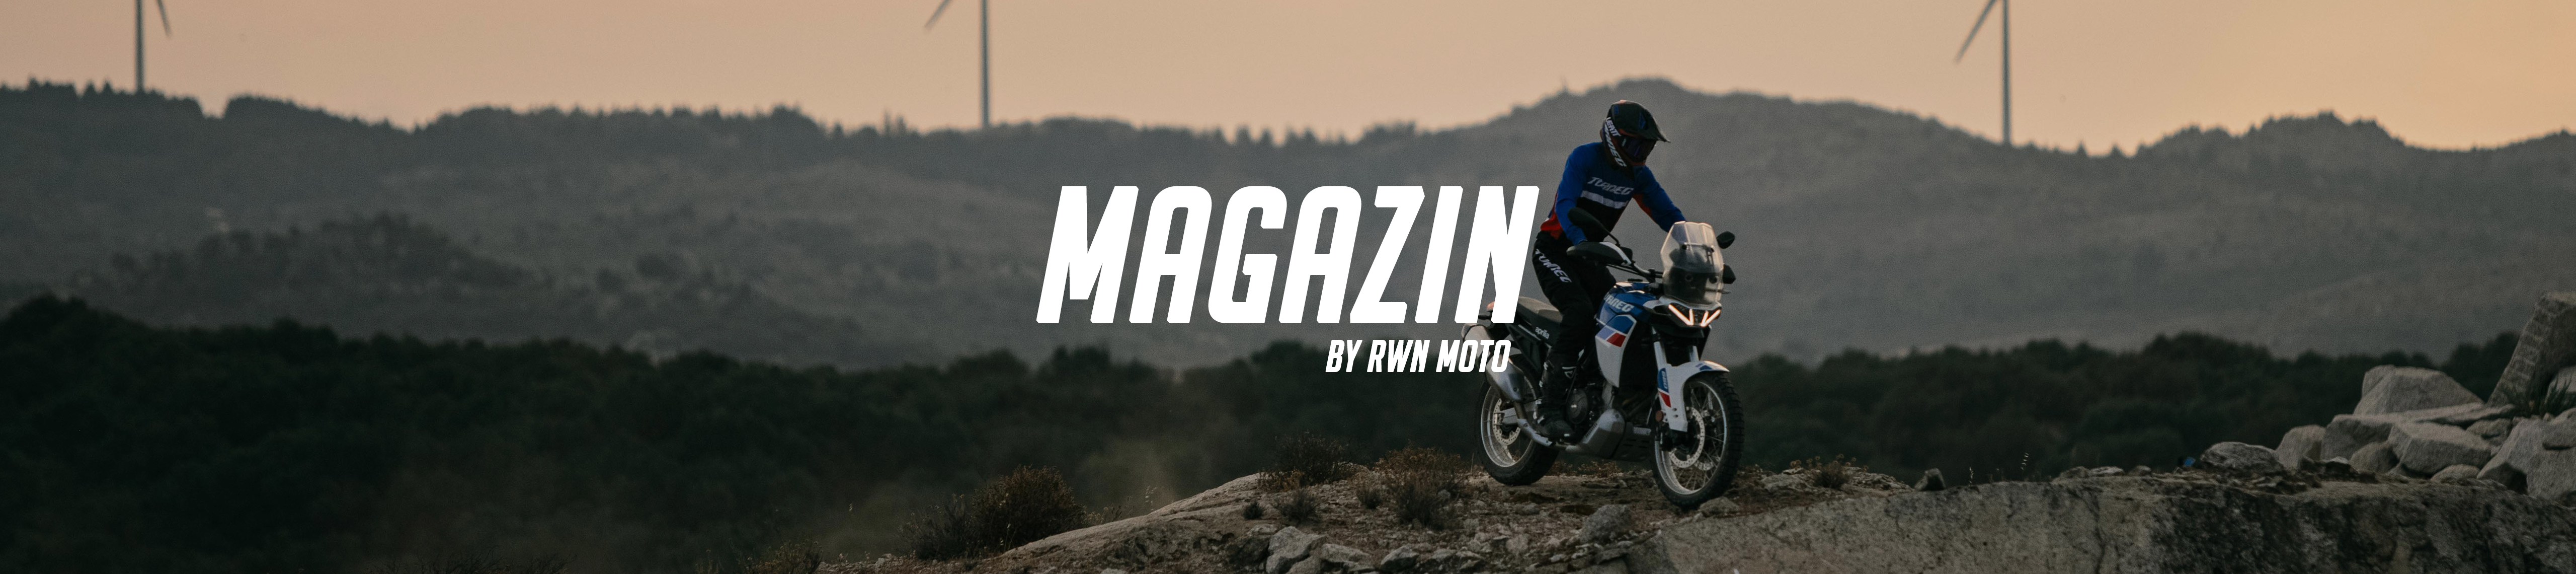 RWN-Moto-Magazine_01